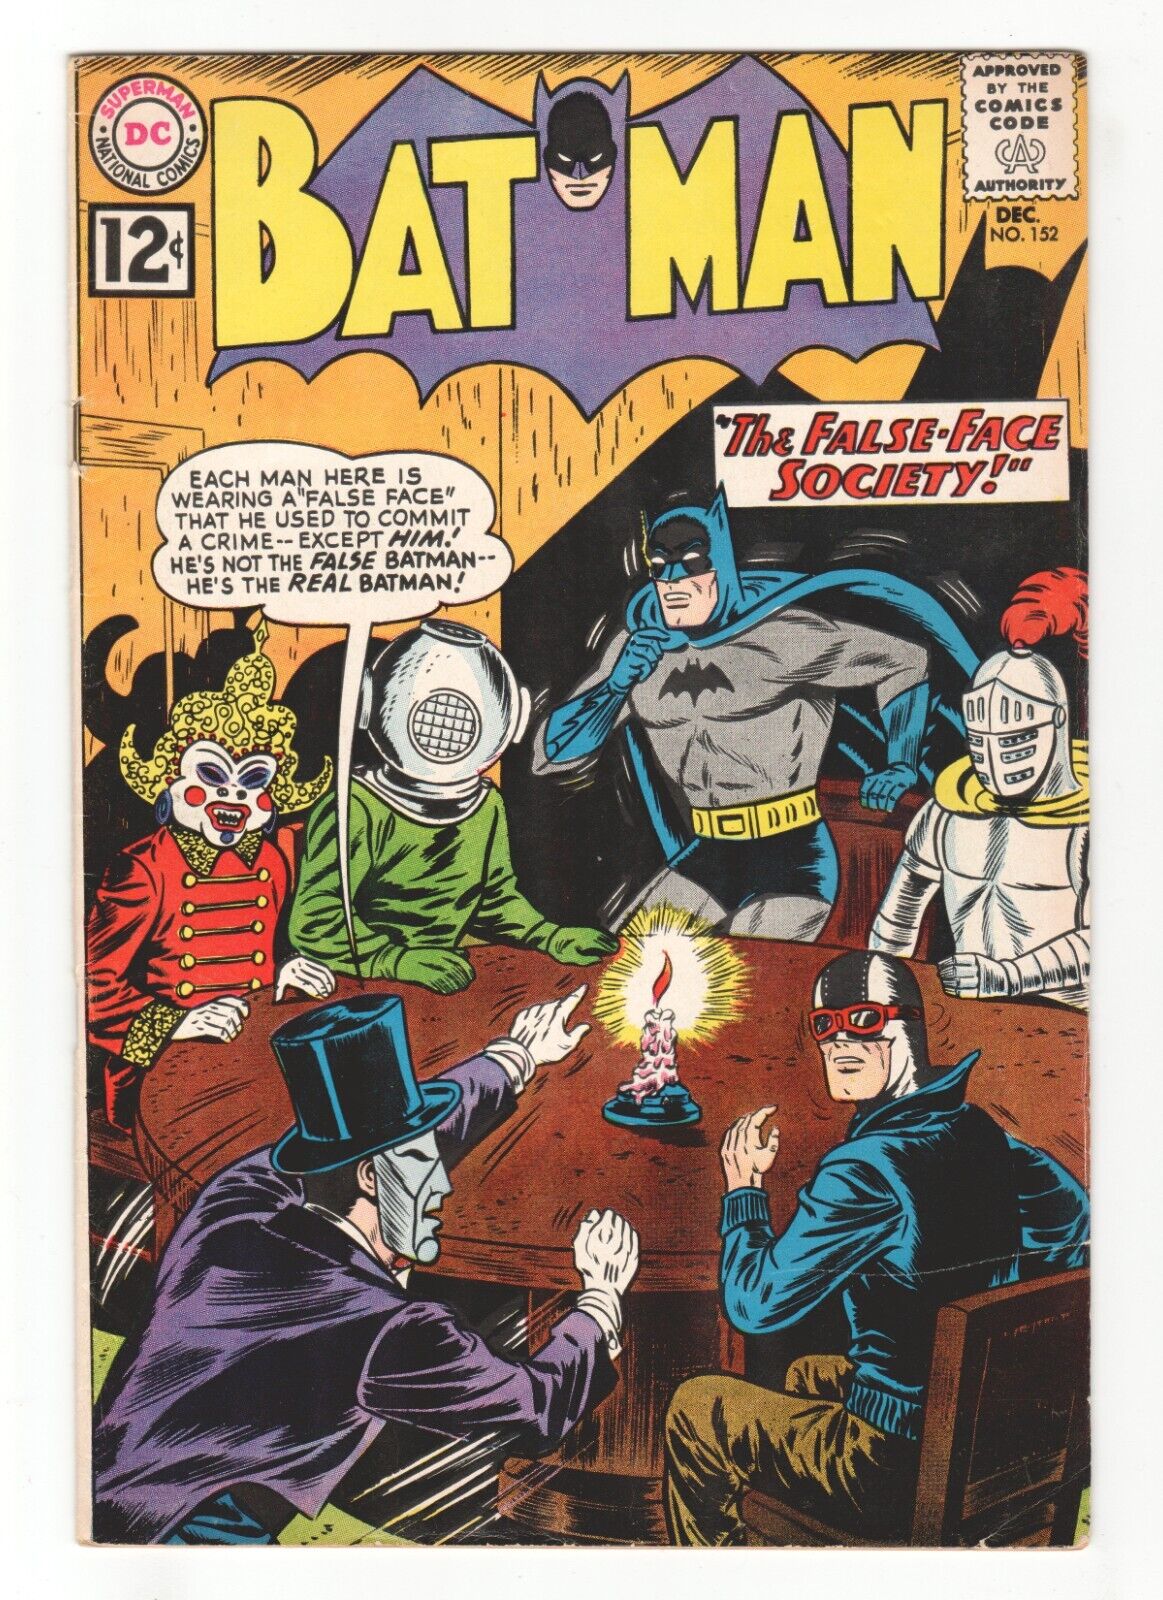 Batman #152 - 1st False Face Society - BILL FINGER - SHELDON MOLDOFF Cover VG/FN